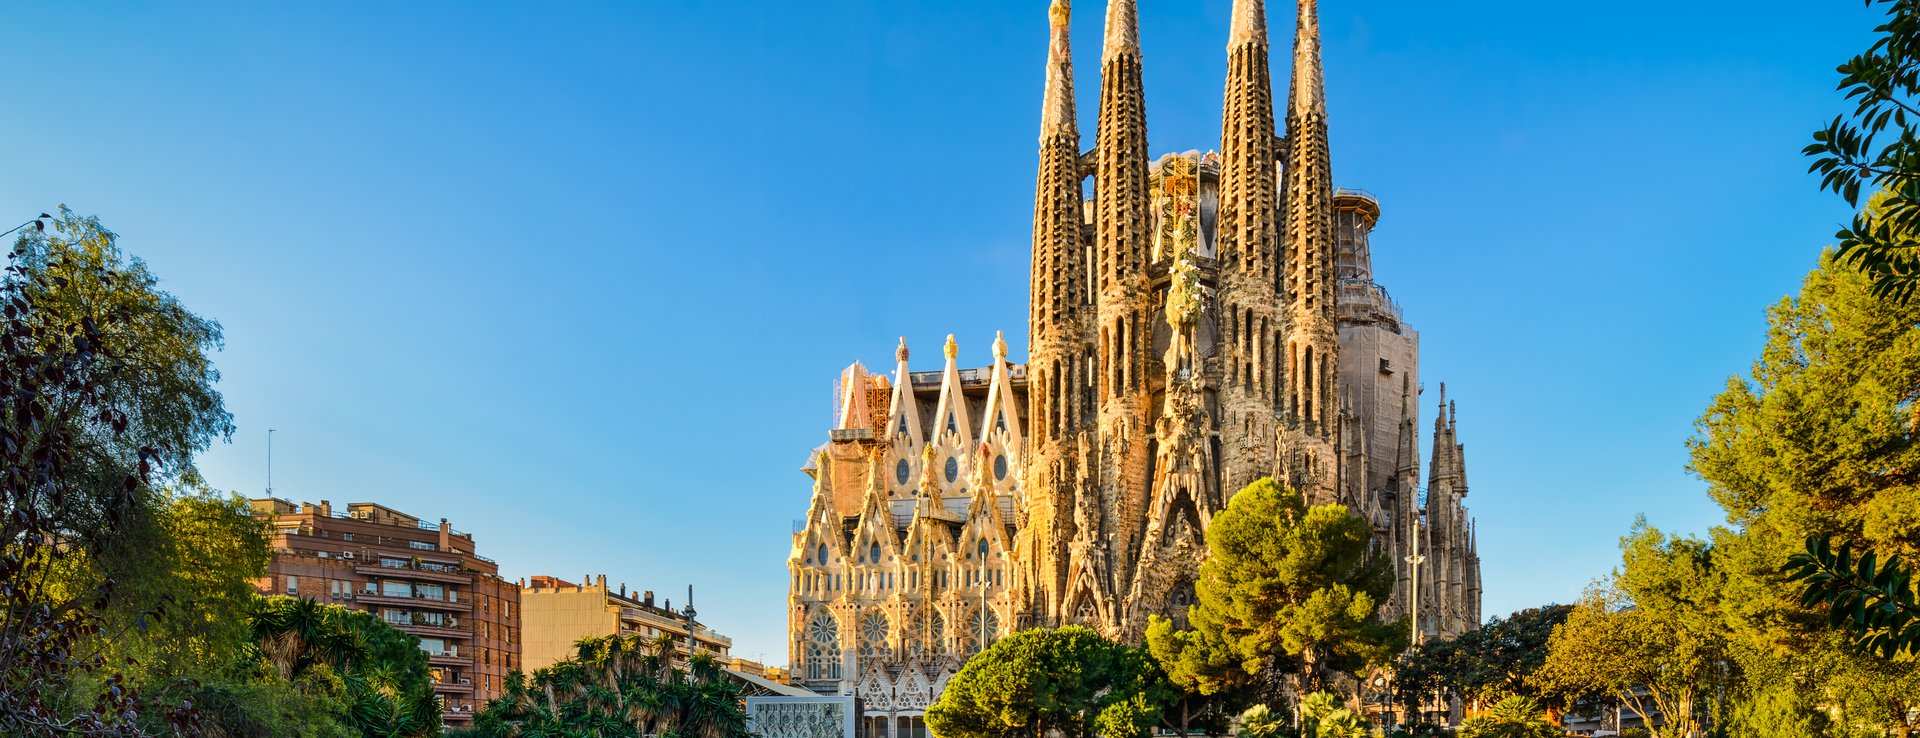 Basílica de la Sagrada Família Image 1